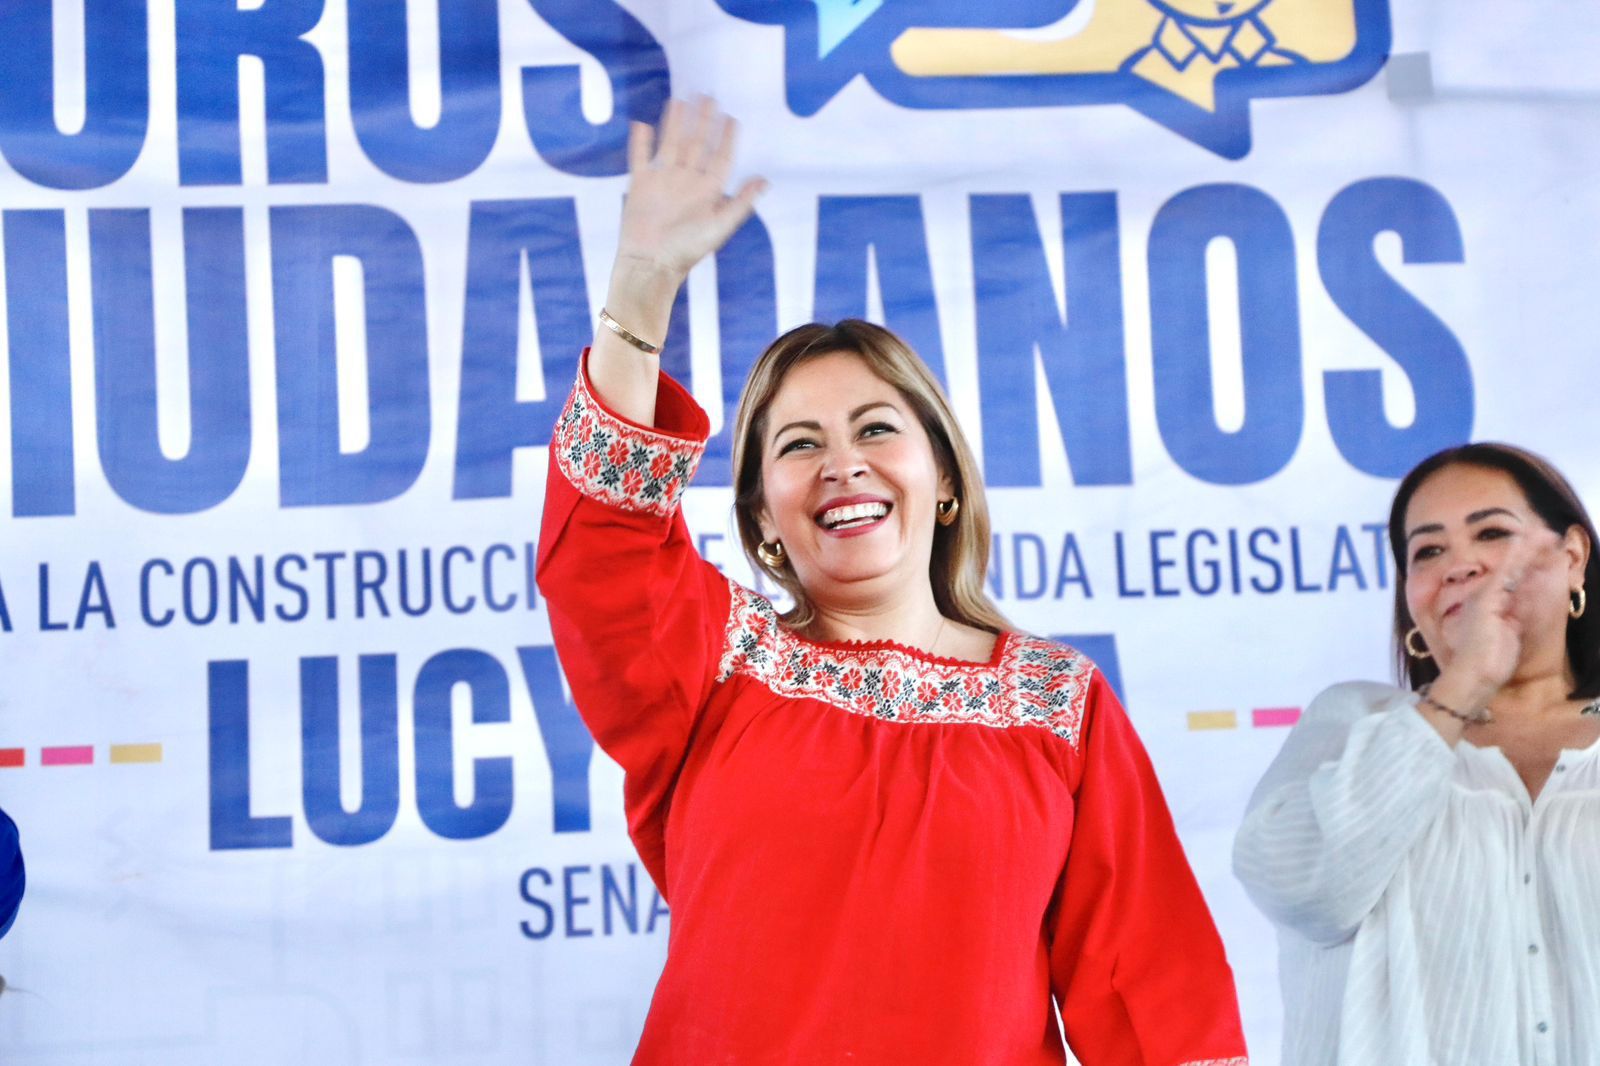 Con la decisión del tribunal pierde Cuauhtémoc Blanco y gana el pueblo de Morelos: Lucy Meza